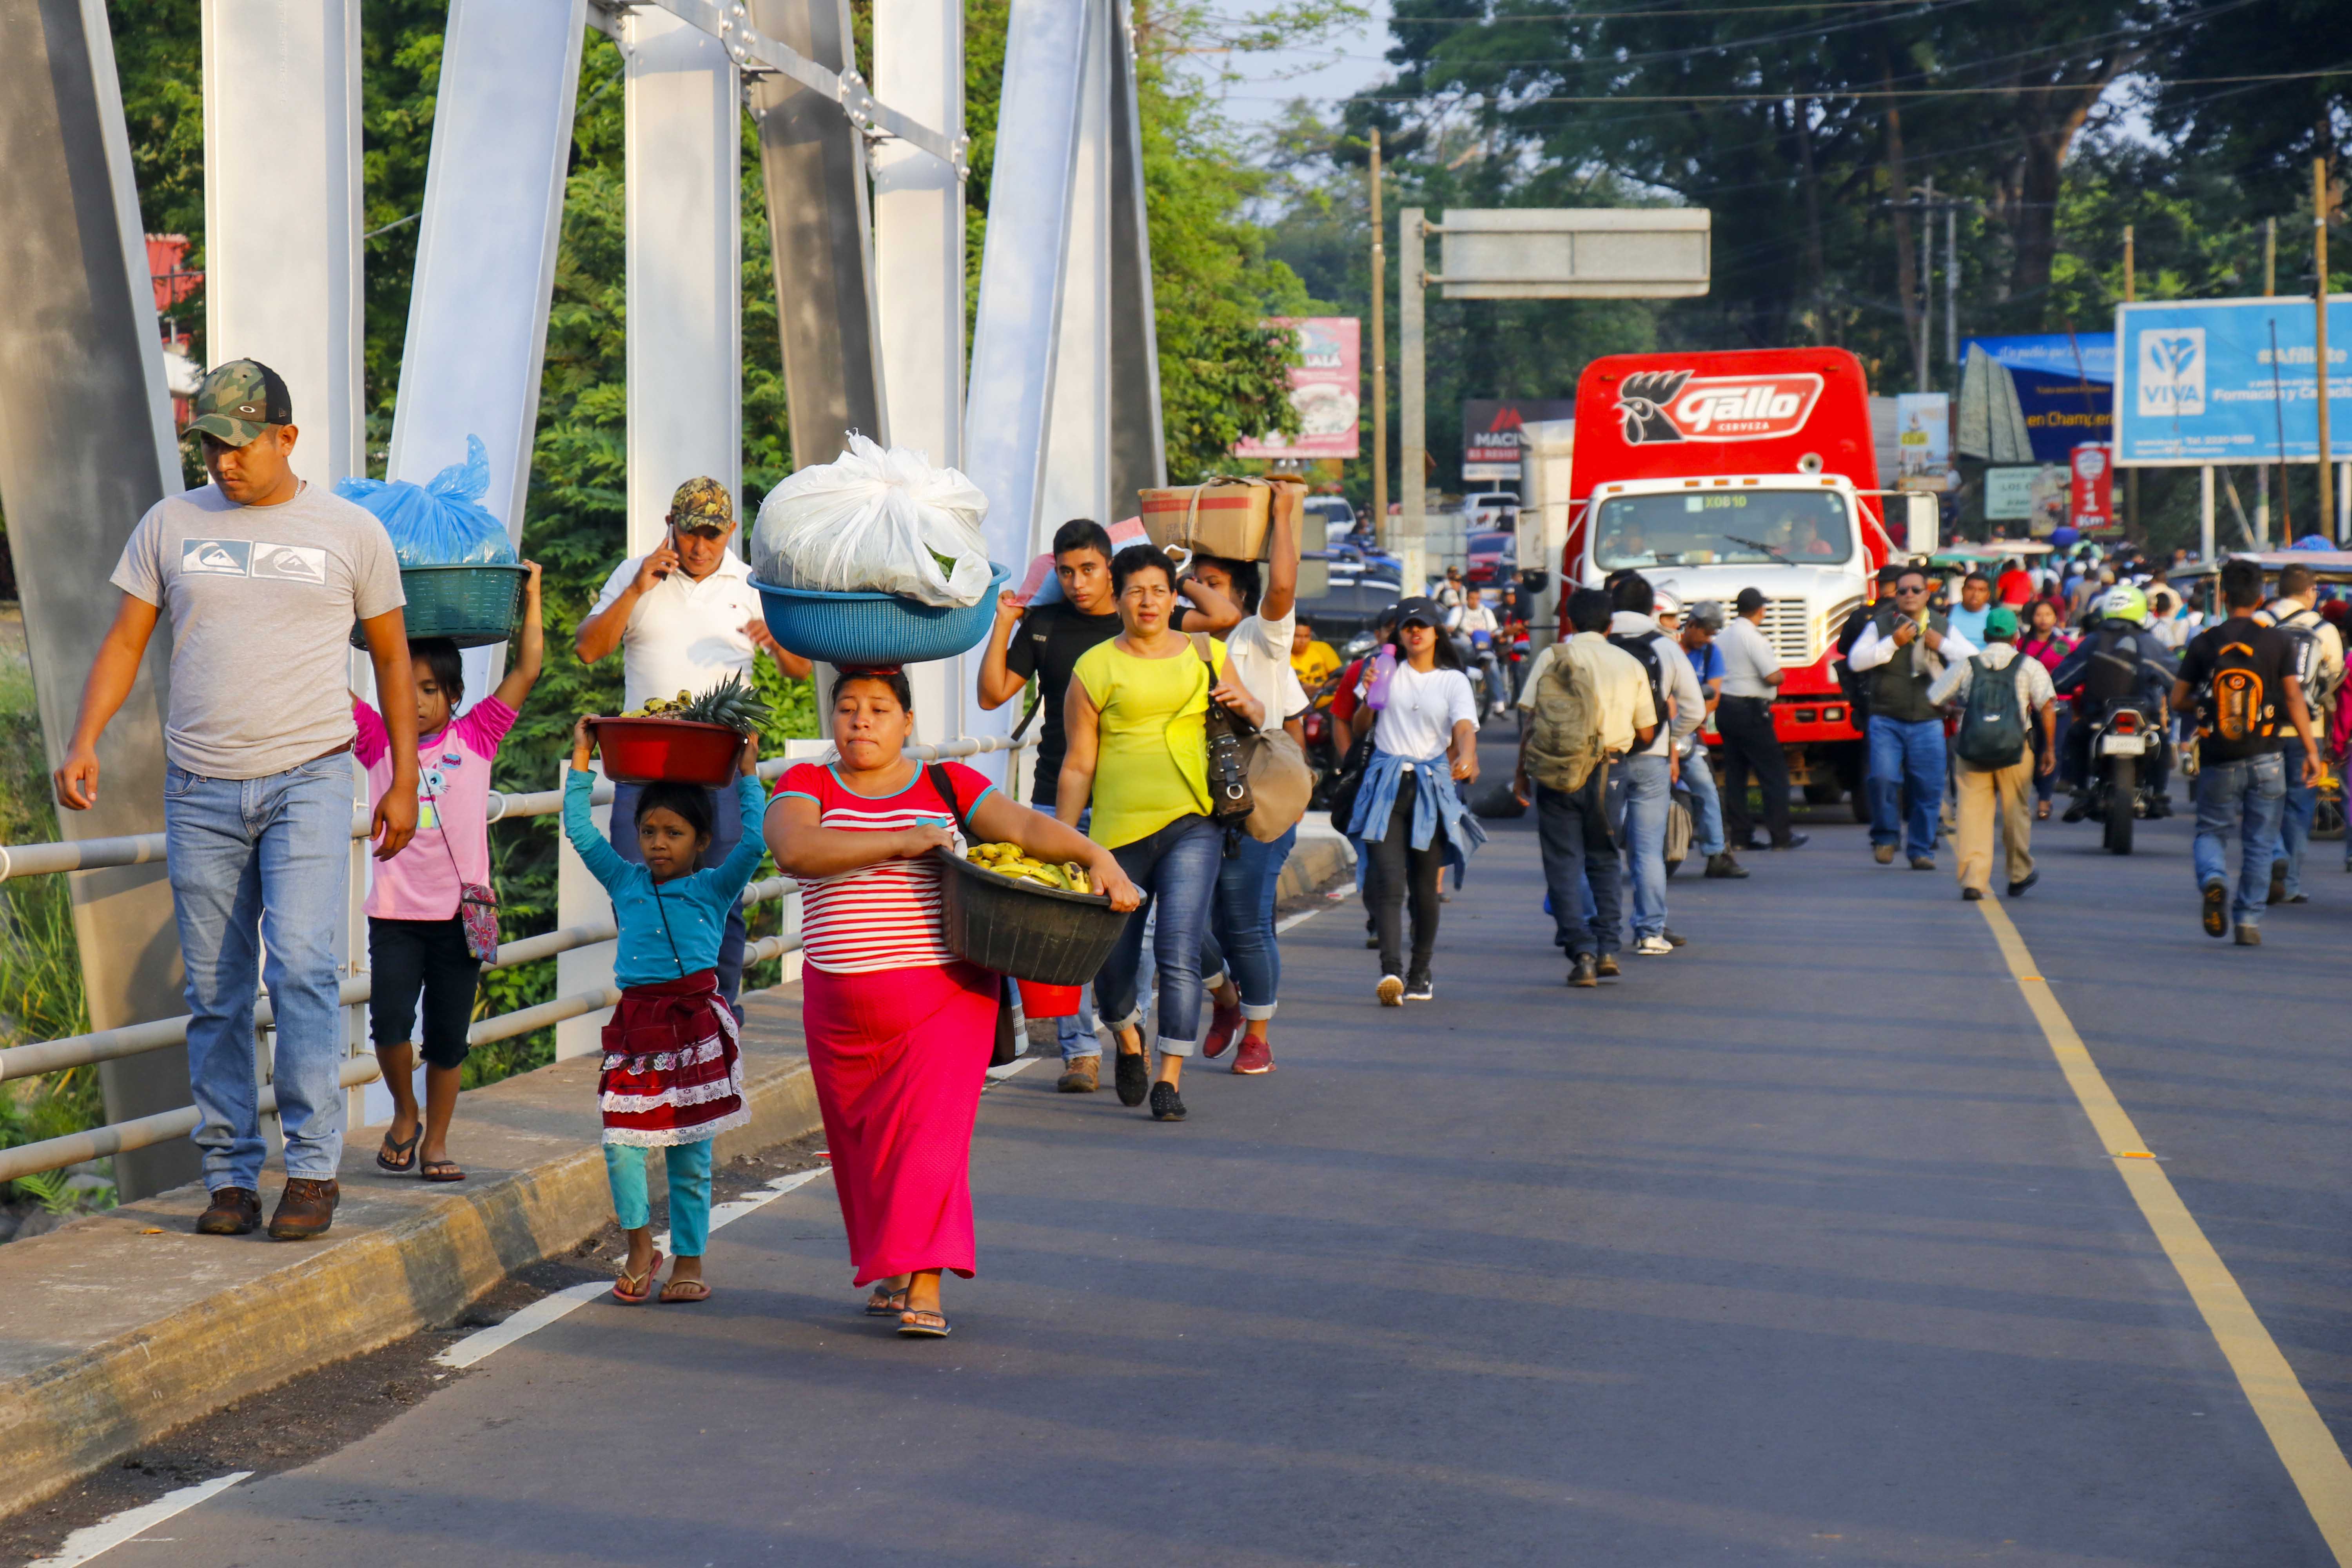 Pobladores caminaron un kilómetro para transbordar buses a causa del bloqueo de carretera en la carretera al suroccidente en Retalhuleu. (Foto Prensa Libre: Rolando Miranda)